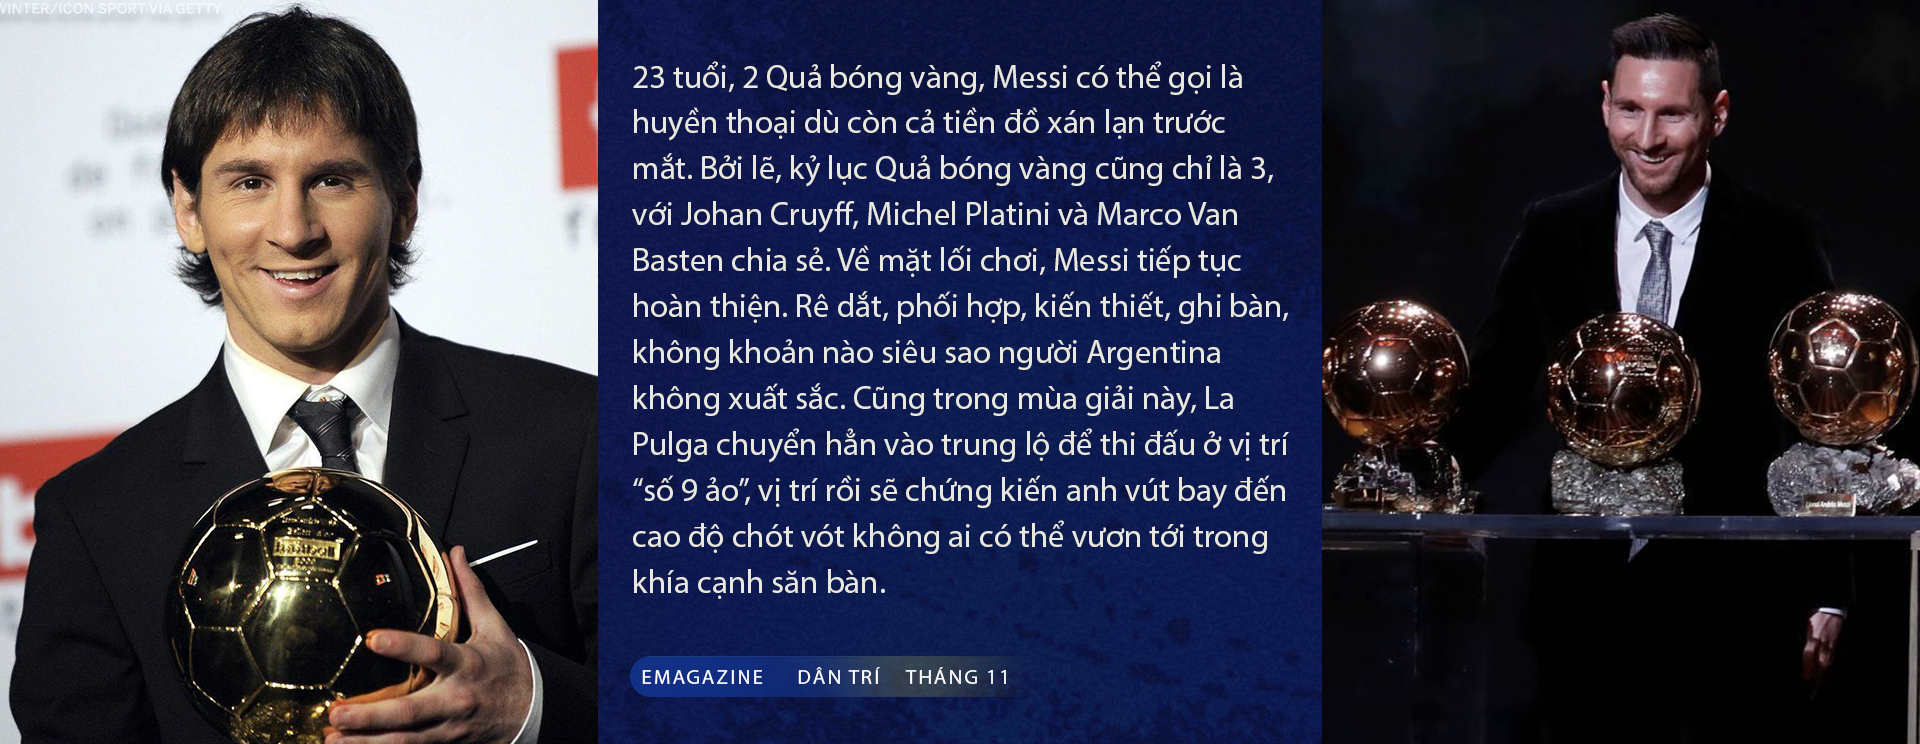 Đếm bước Quả bóng vàng trên dấu chân vĩ đại của Lionel Messi - 15